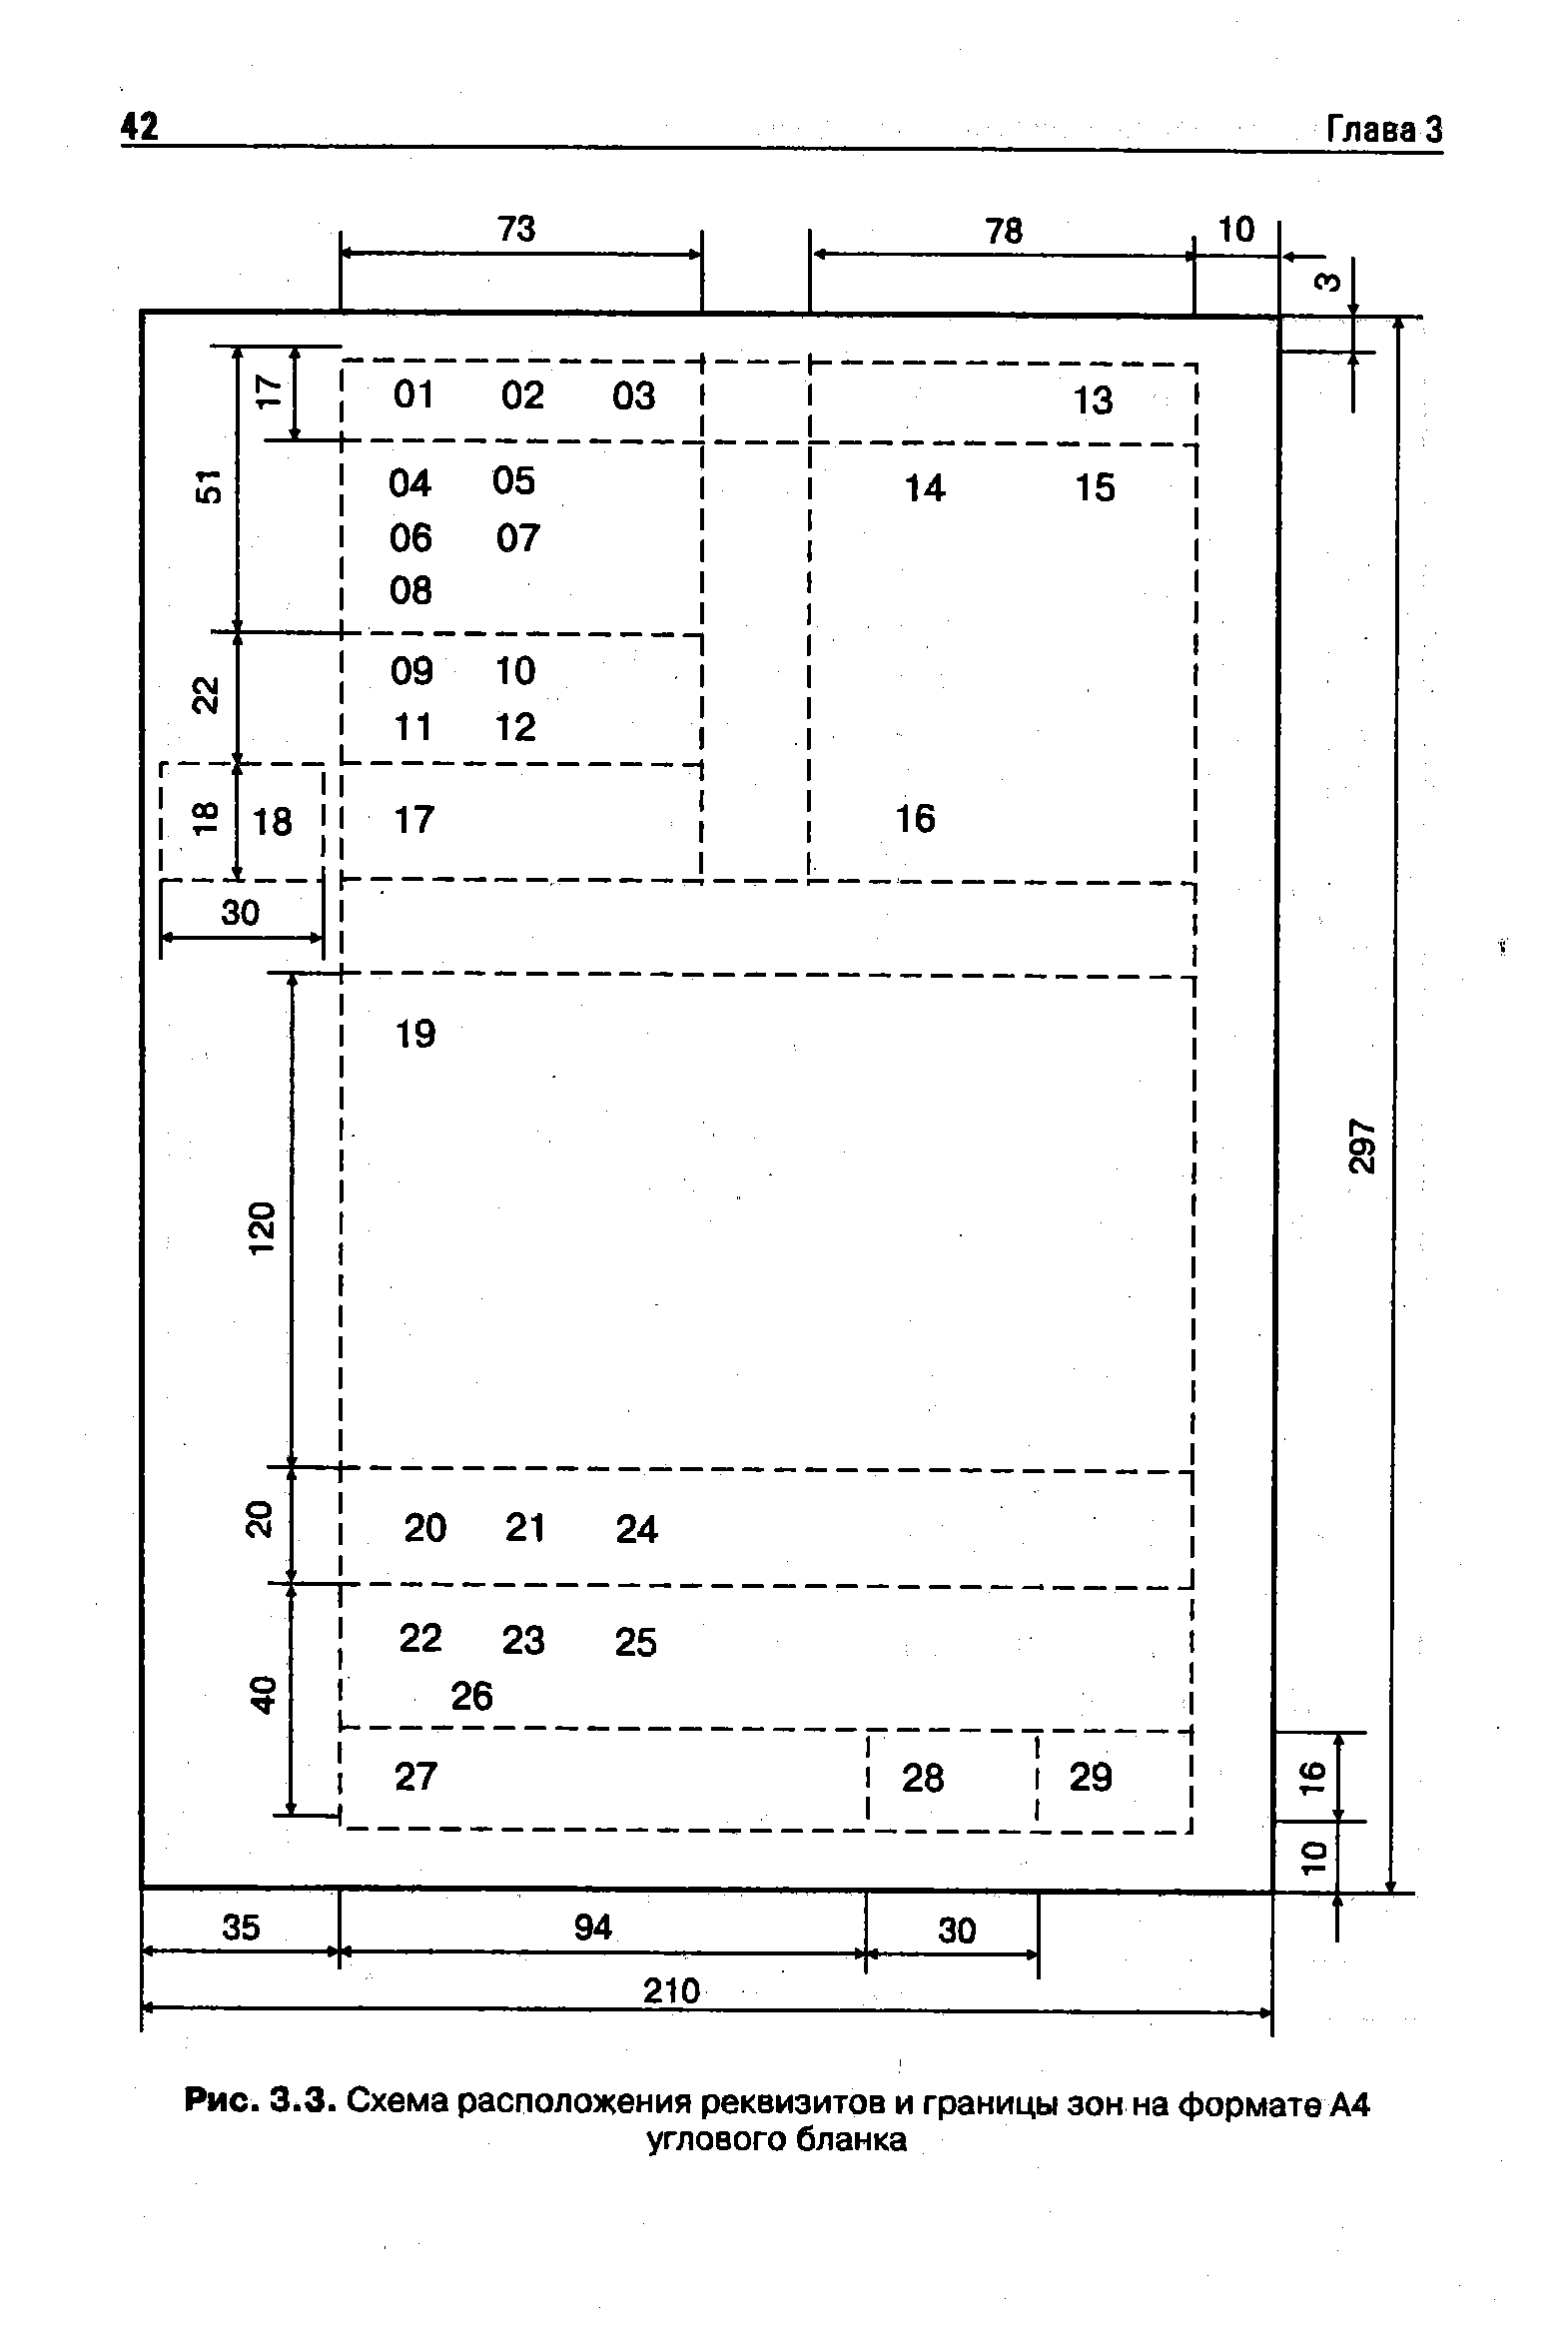 Рис. 3.3. Схема расположения реквизитов и границы зон на формате А4
